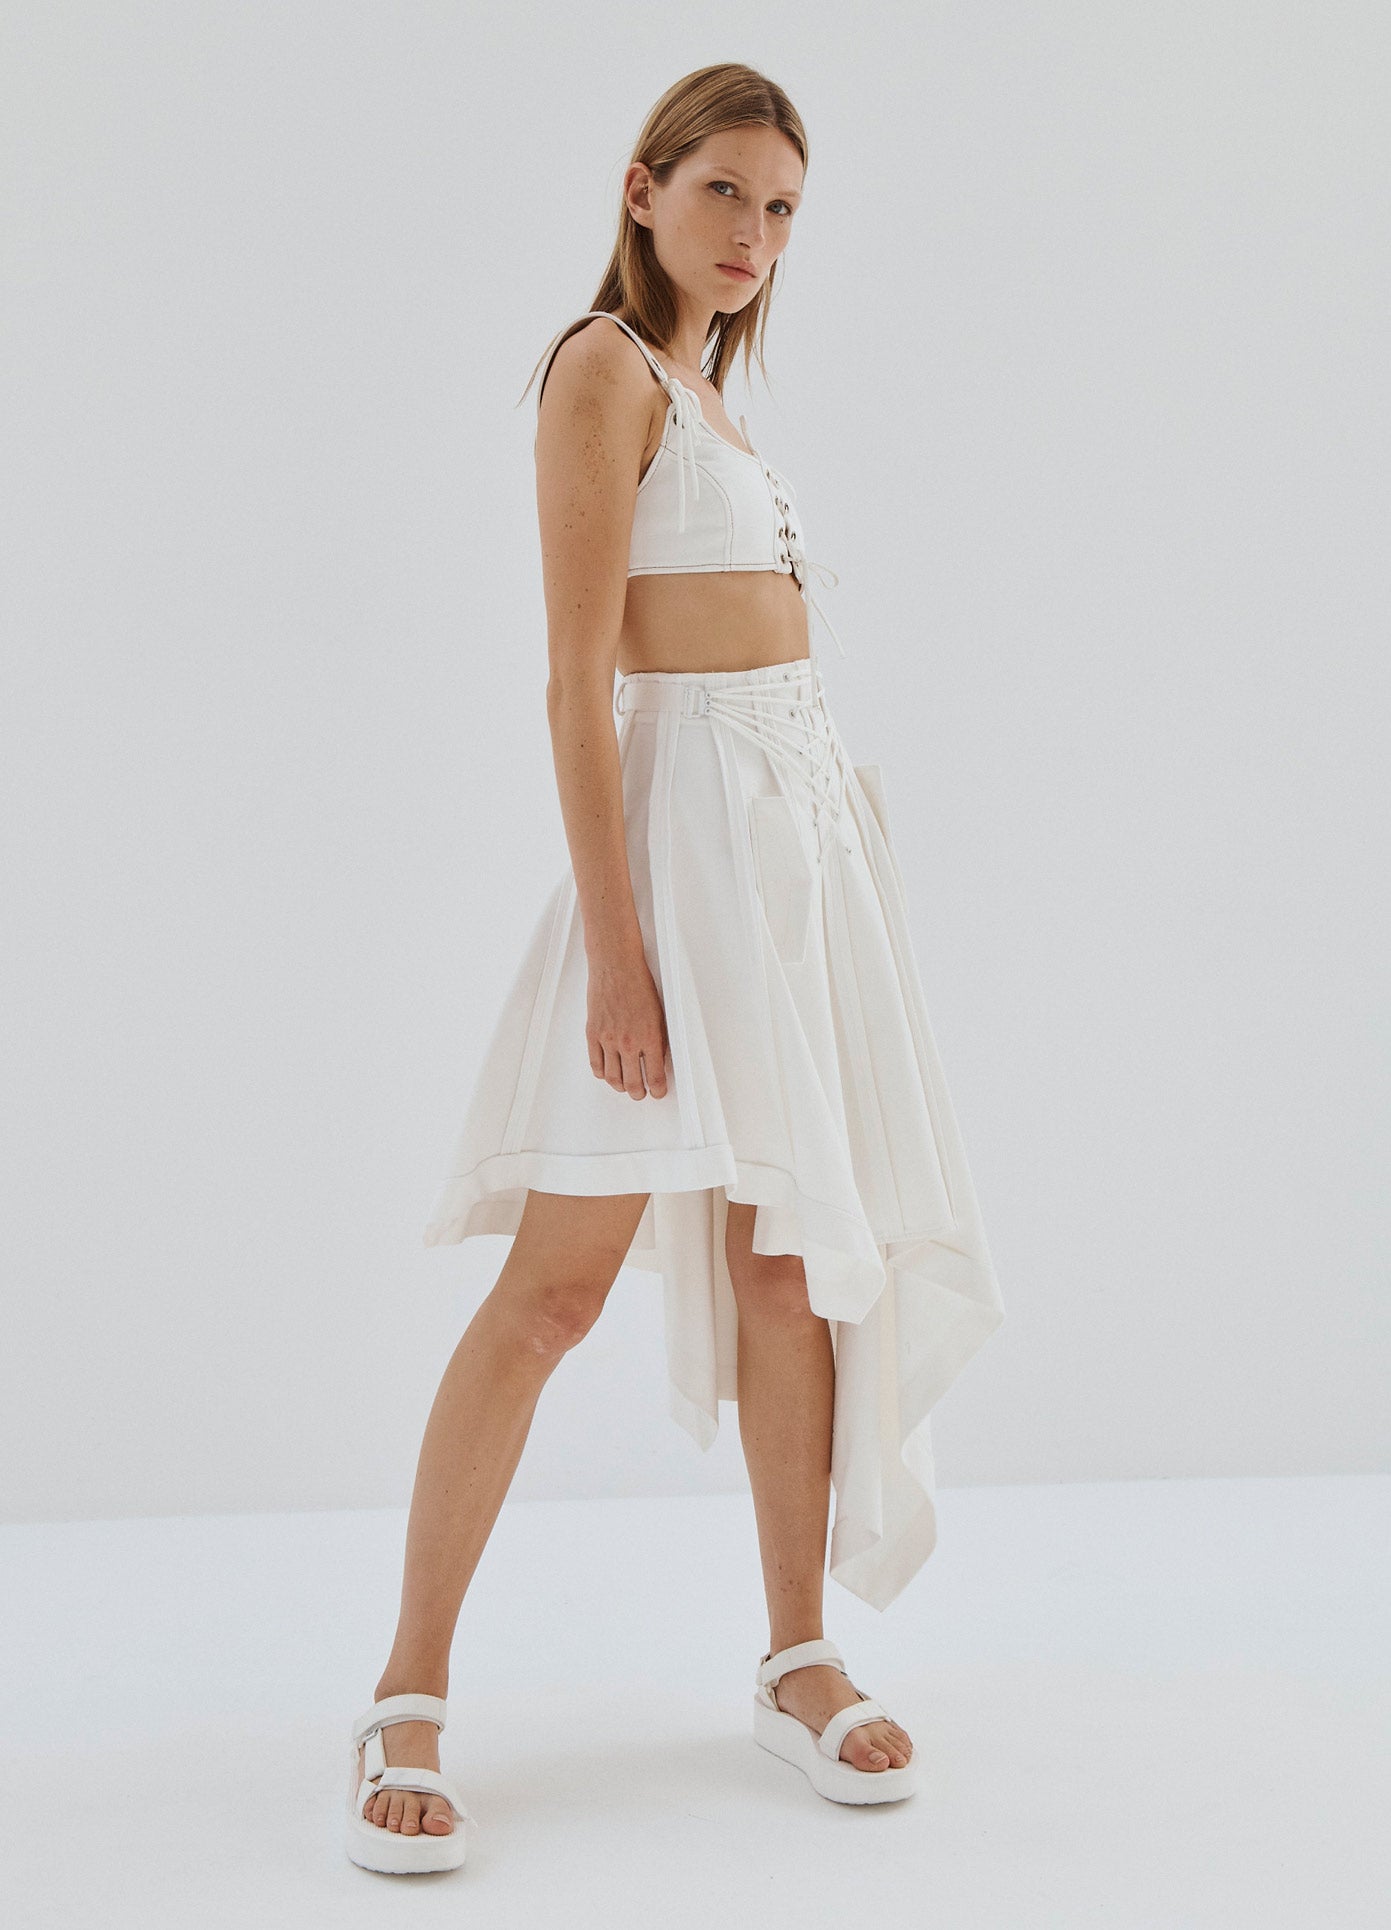 MONSE Laced Up Asymmetrical Hem Skirt in White on Model Full Side View